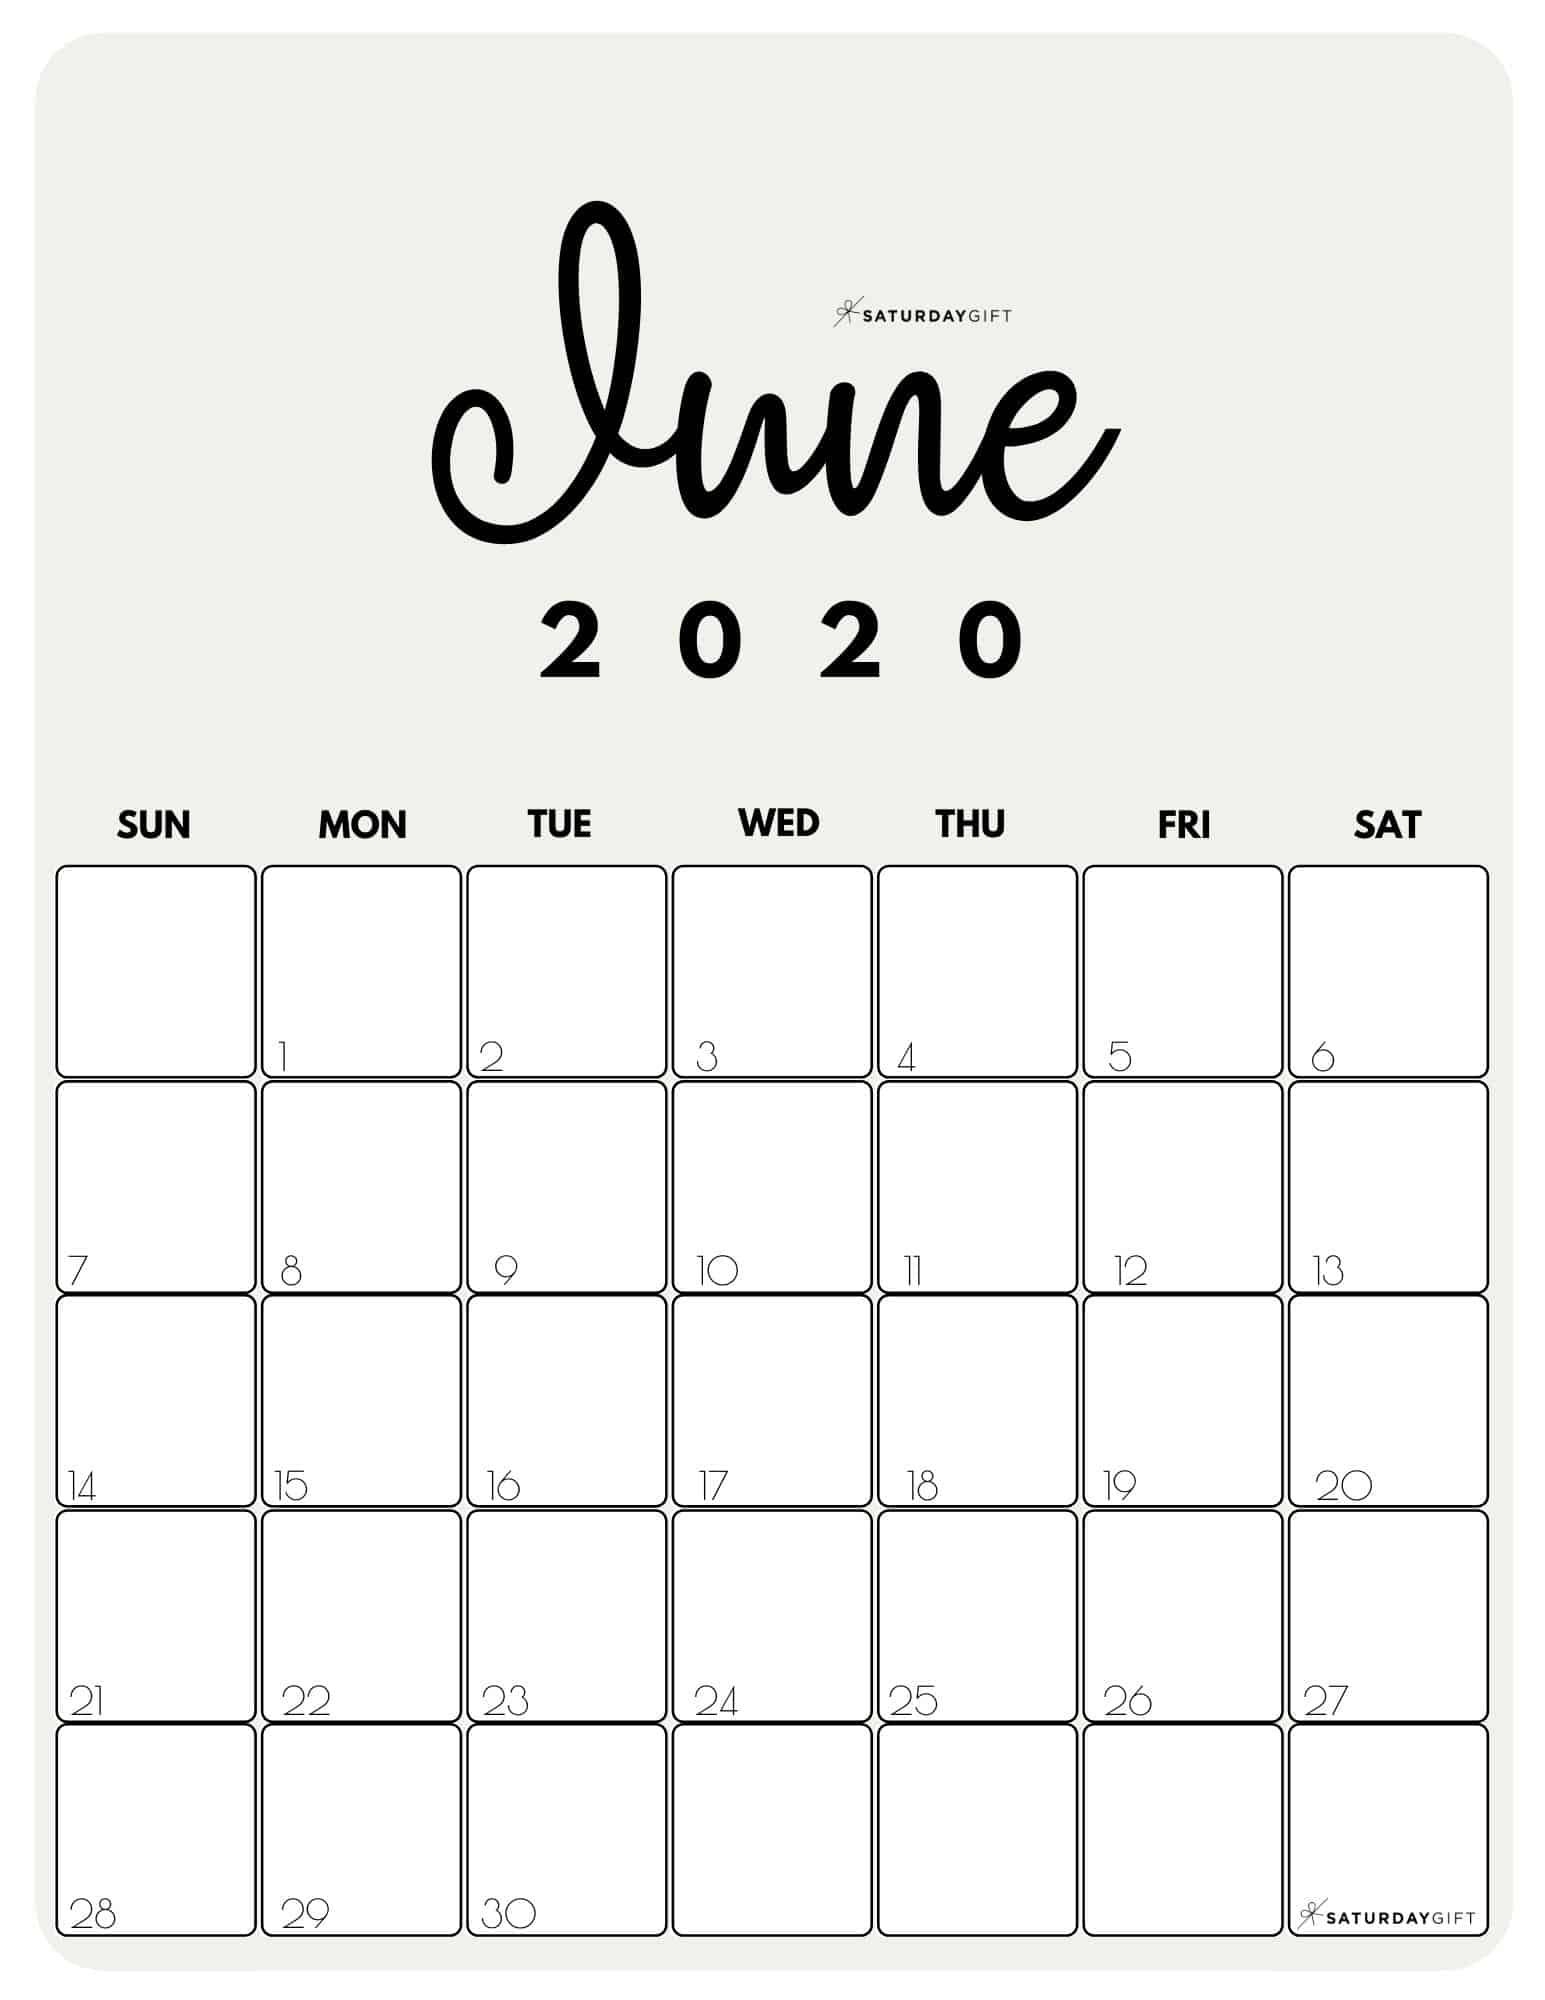 Cute (&amp; Free!) Printable June 2021 Calendar | Saturdaygift